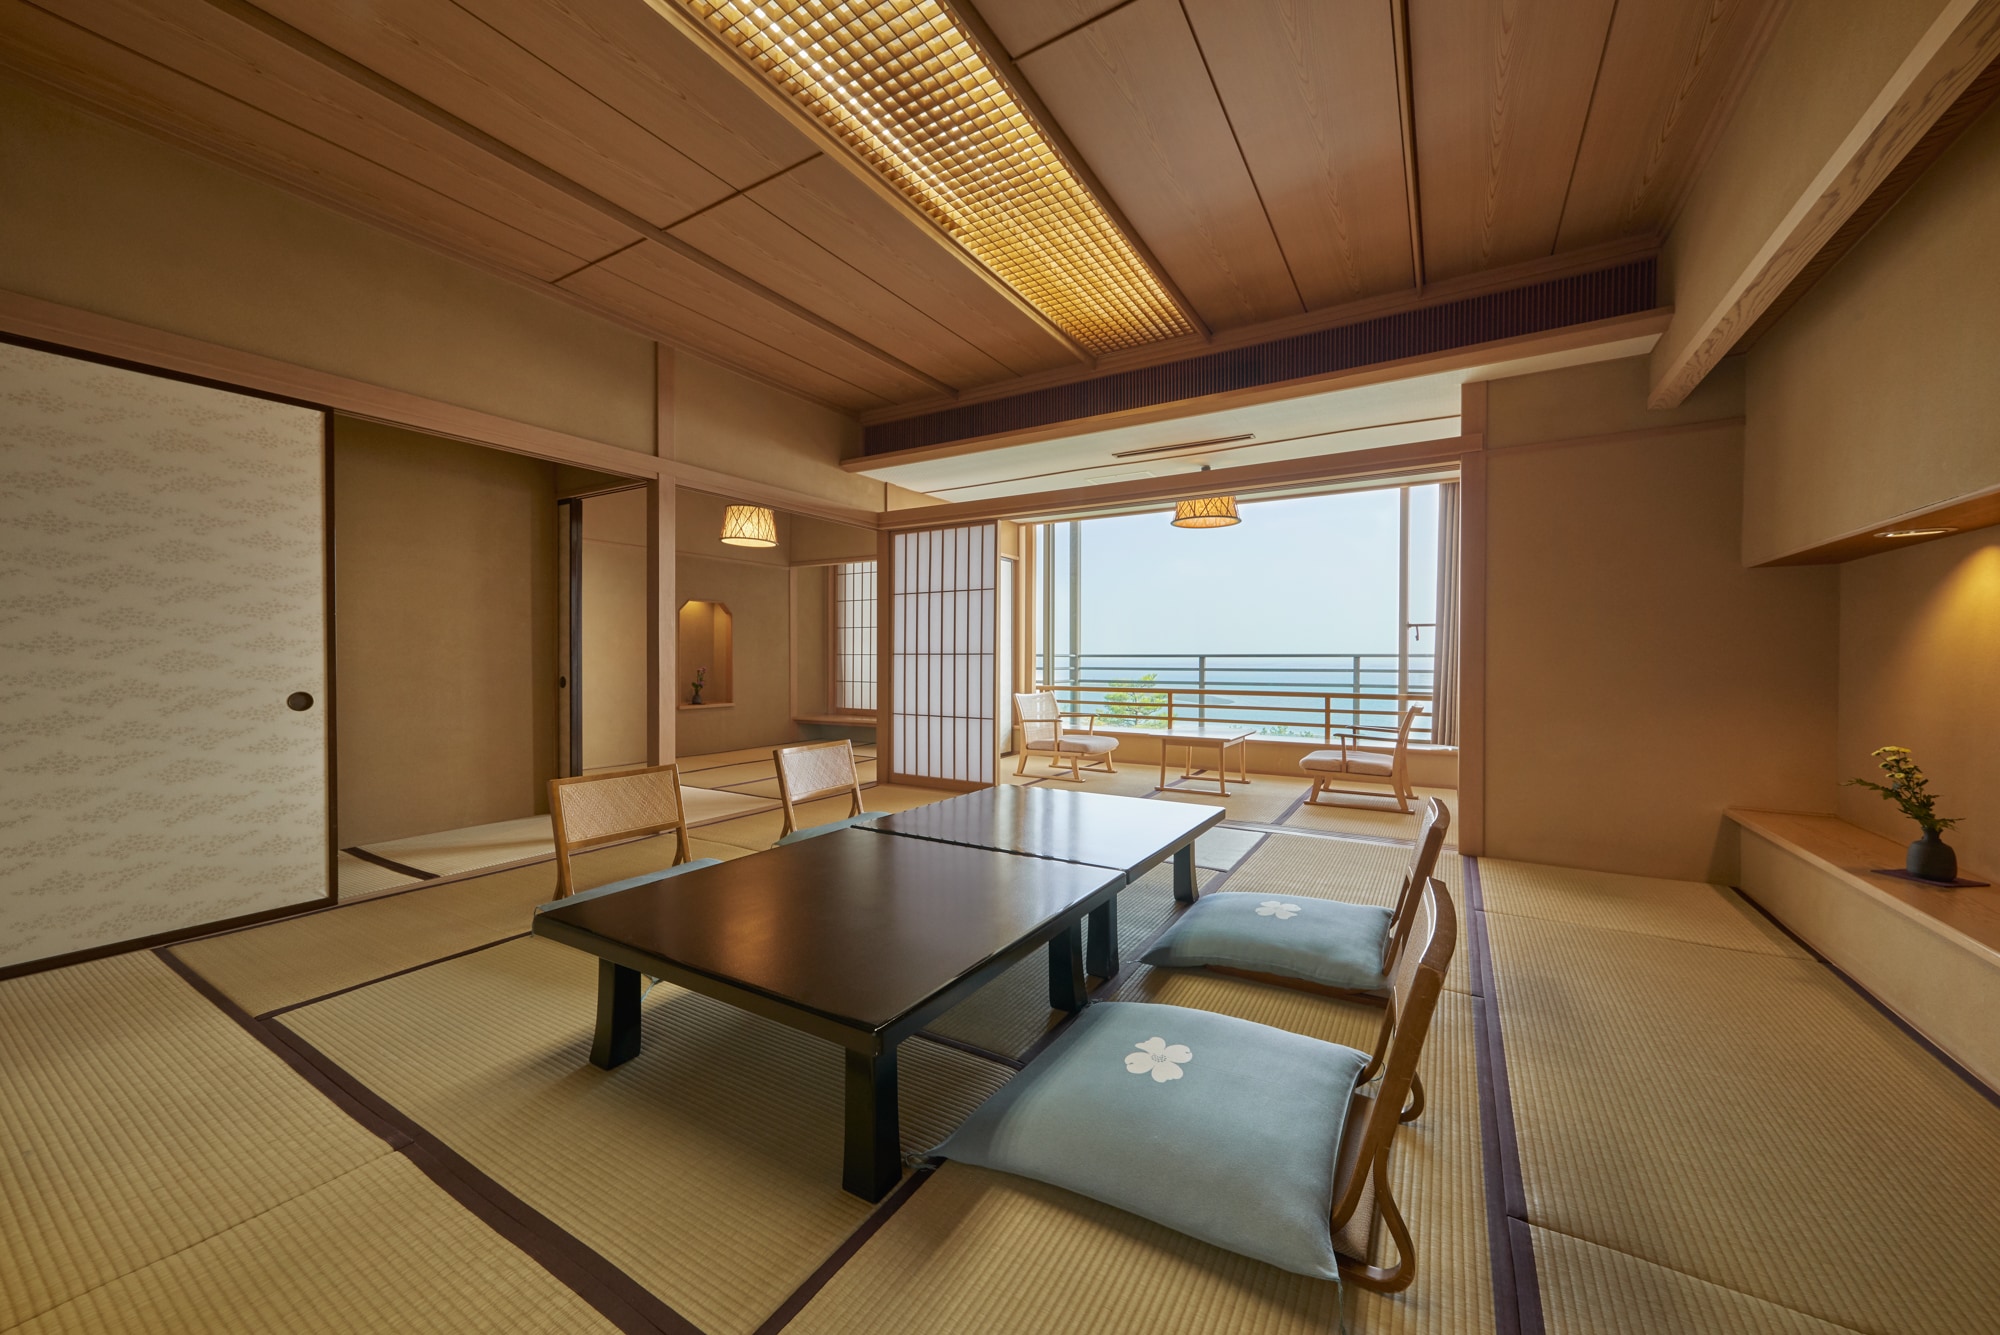 Bangunan utama tipe standar kamar bergaya Jepang